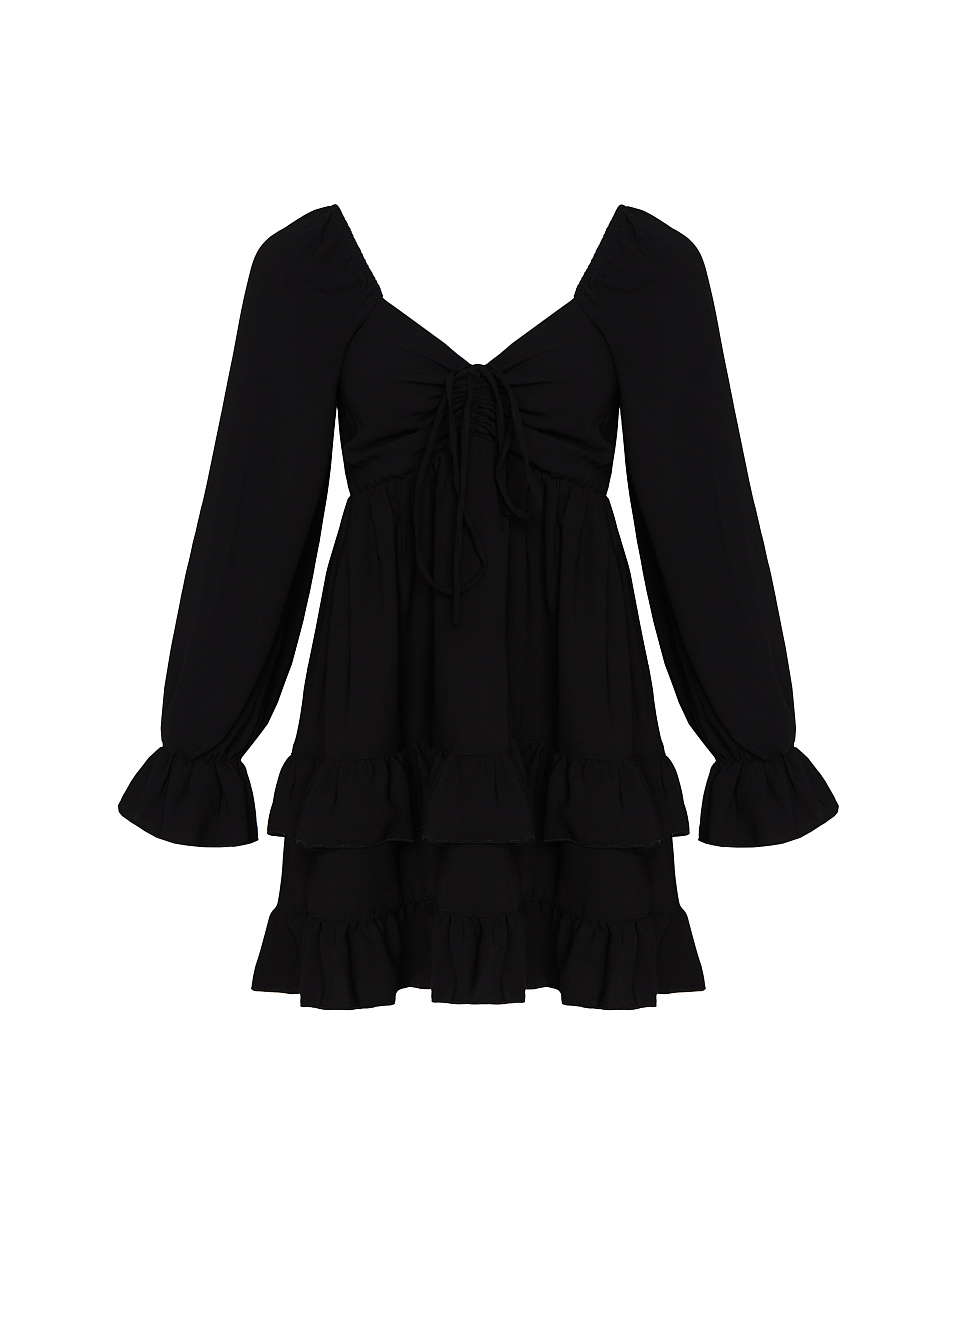 Жіноча сукня Stimma Леонія, колір - чорний